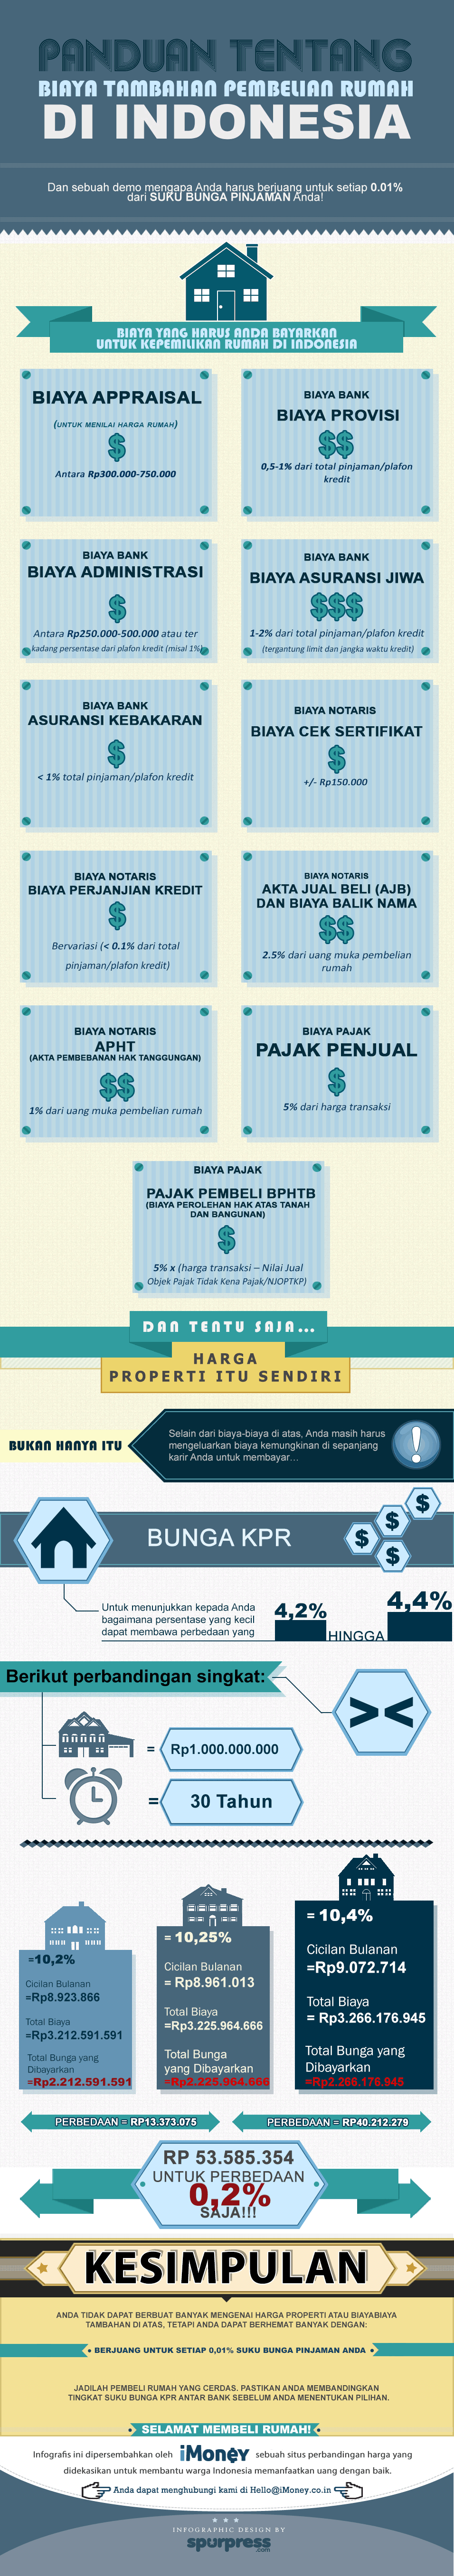 Panduan Tentang Biaya Tambahan Pembelian Rumah Di Indonesia Infographic